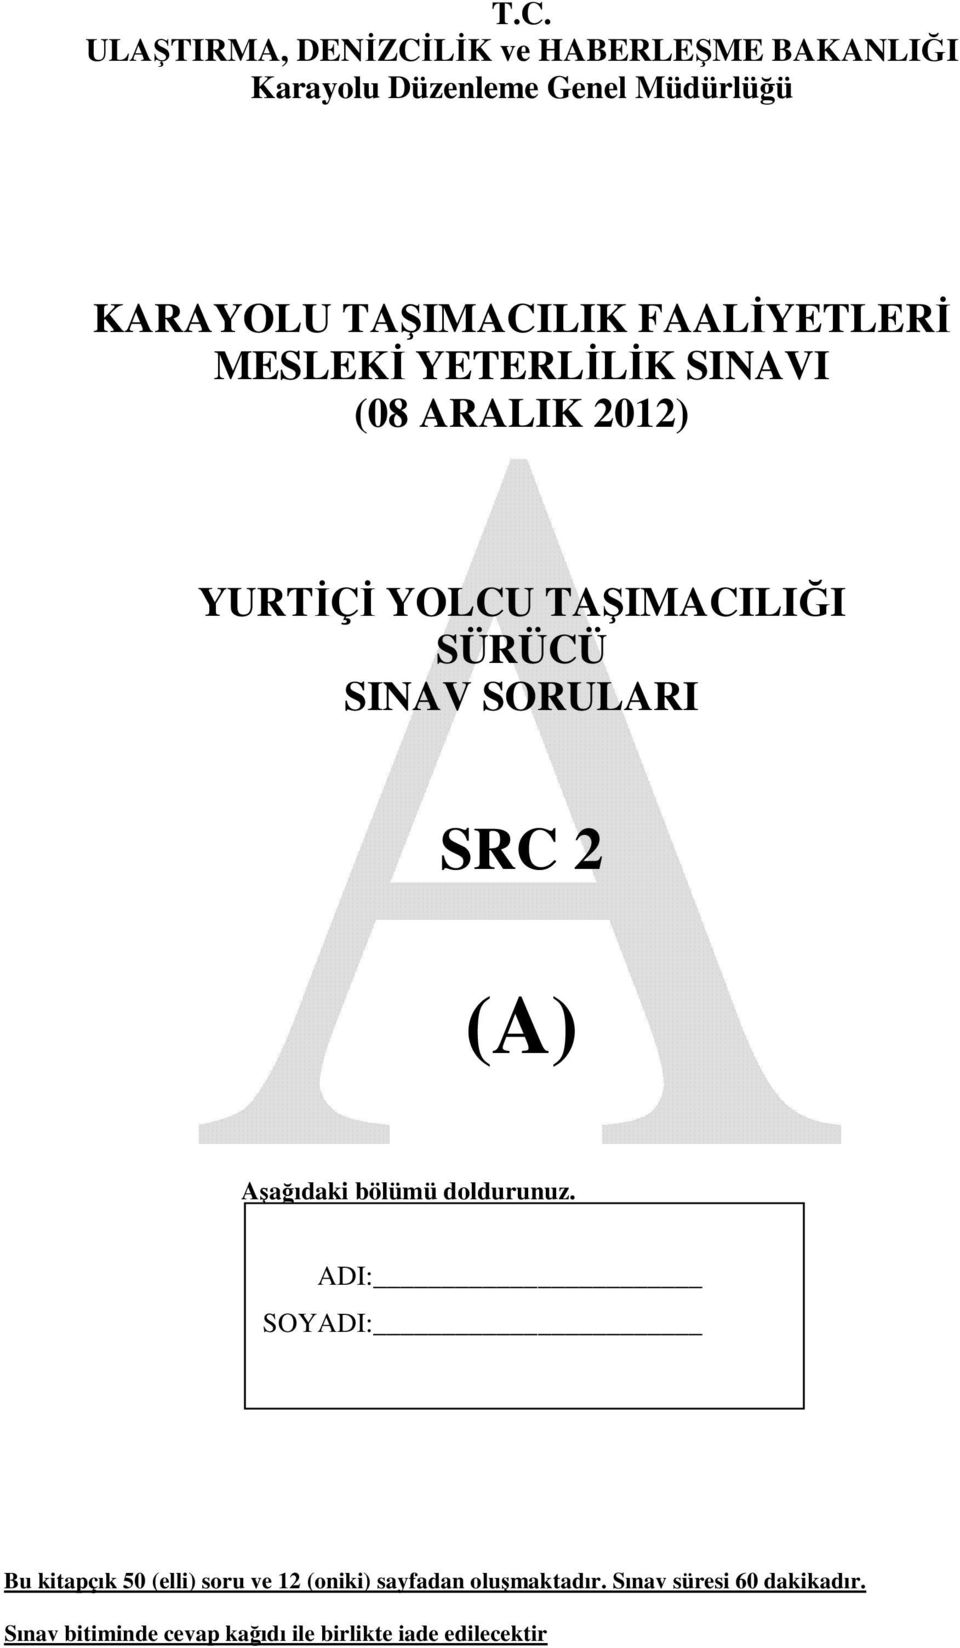 SINAV SORULARI SRC 2 (A) Aşağıdaki bölümü doldurunuz.